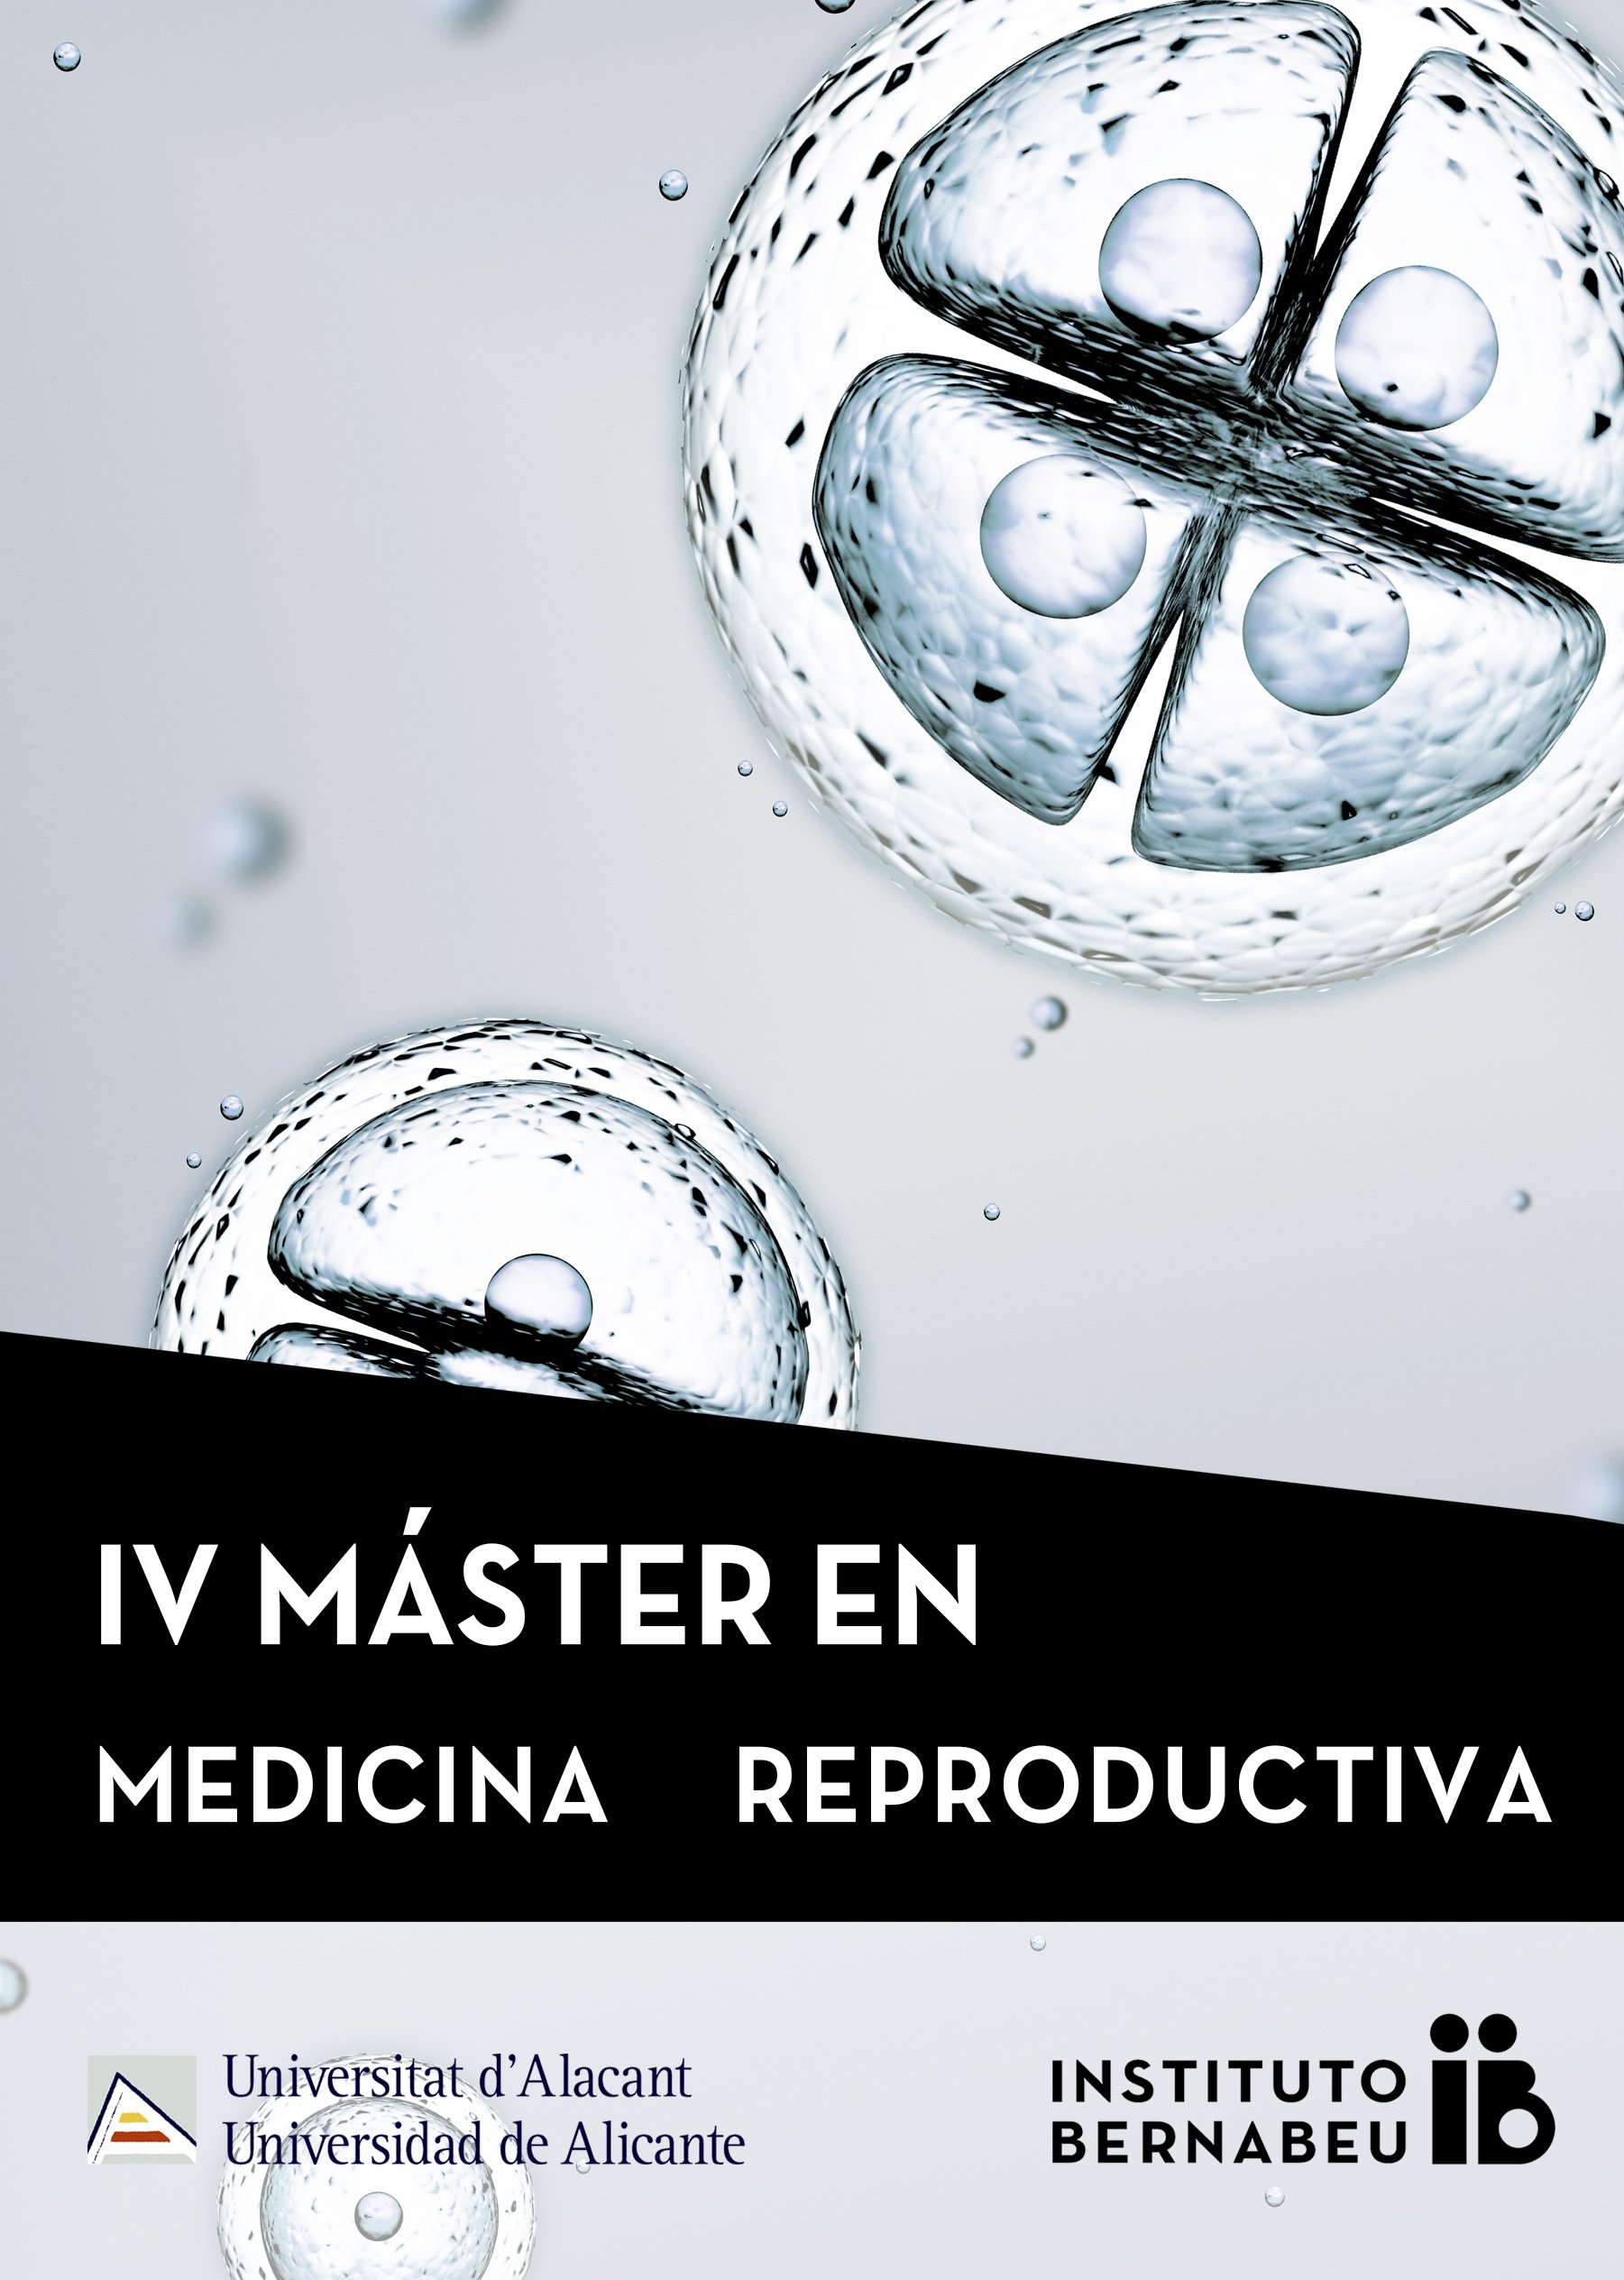 IV Máster en Medicina Reproductiva Universidad de Alicante- Instituto Bernabeu